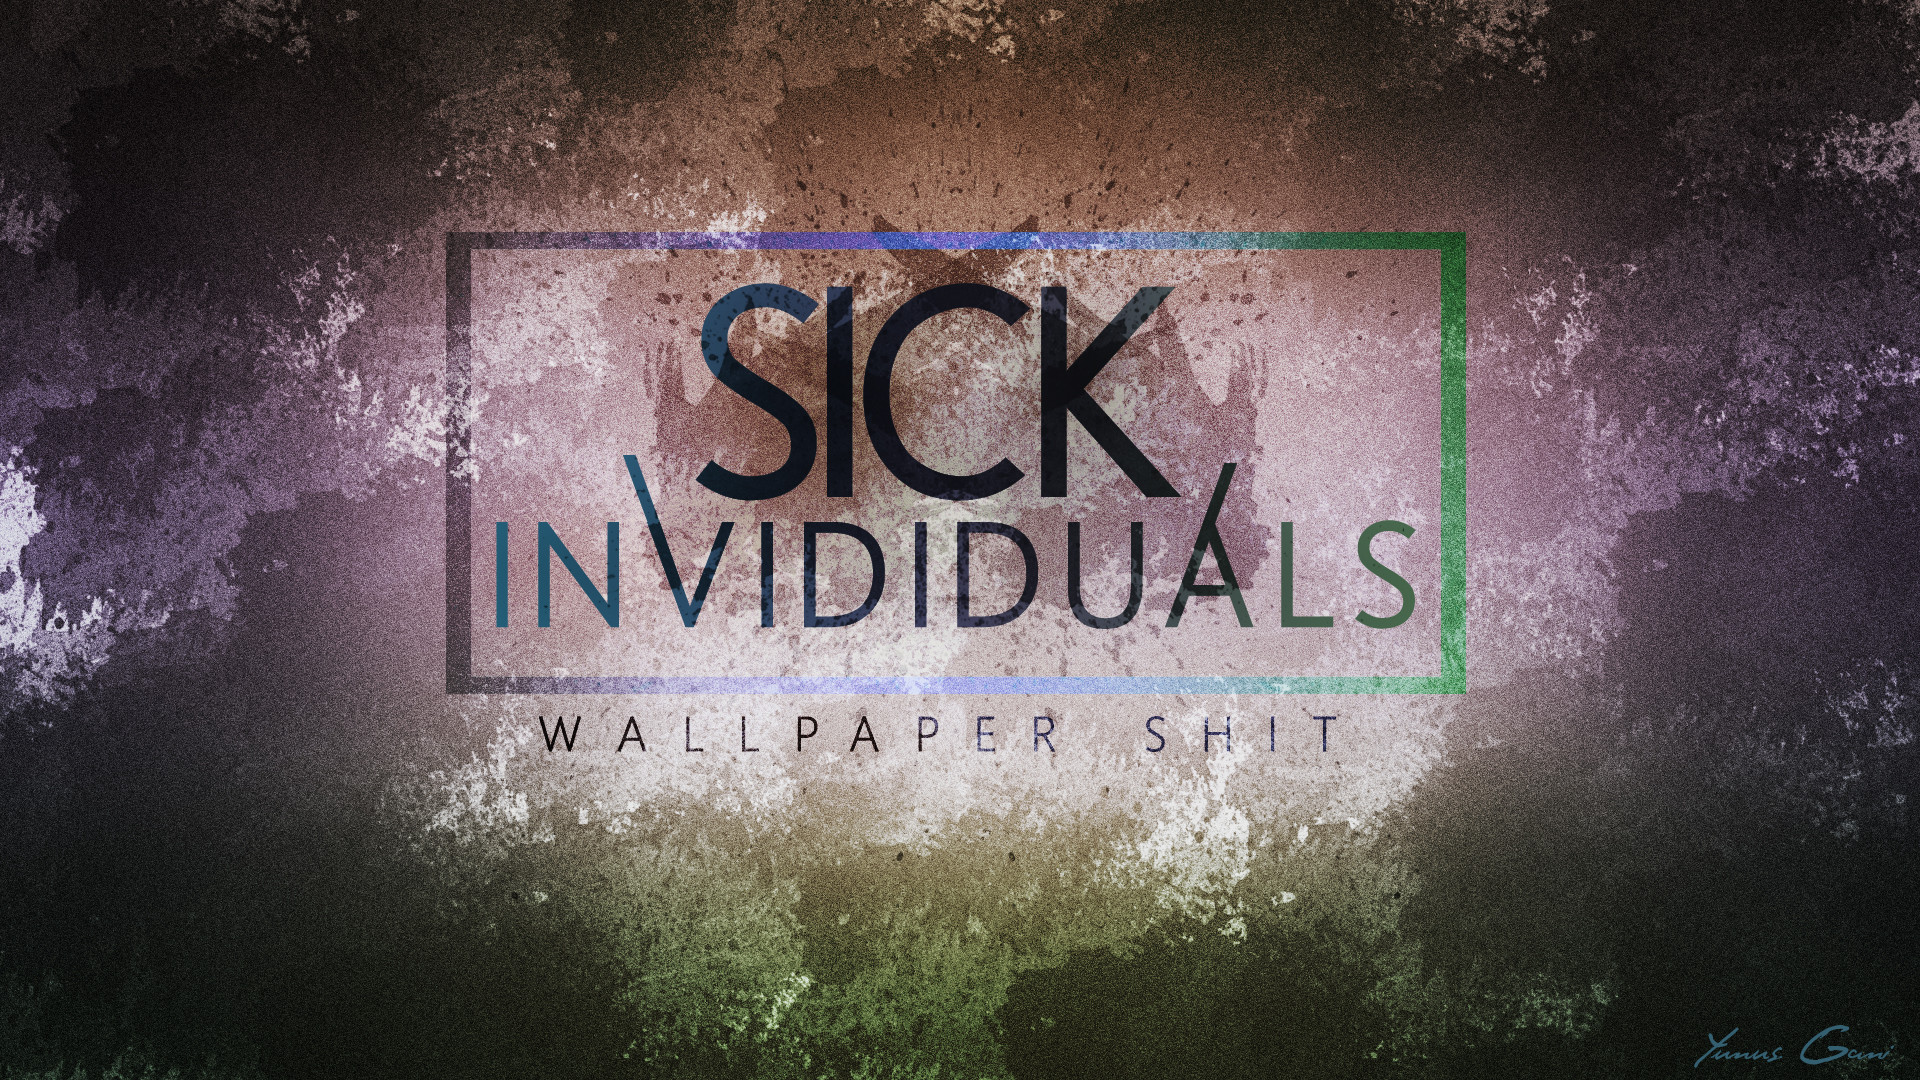 1920x1080 ... Wallpaper Shit VOL1 - Sick Individuals Wallpaper by ProfONE